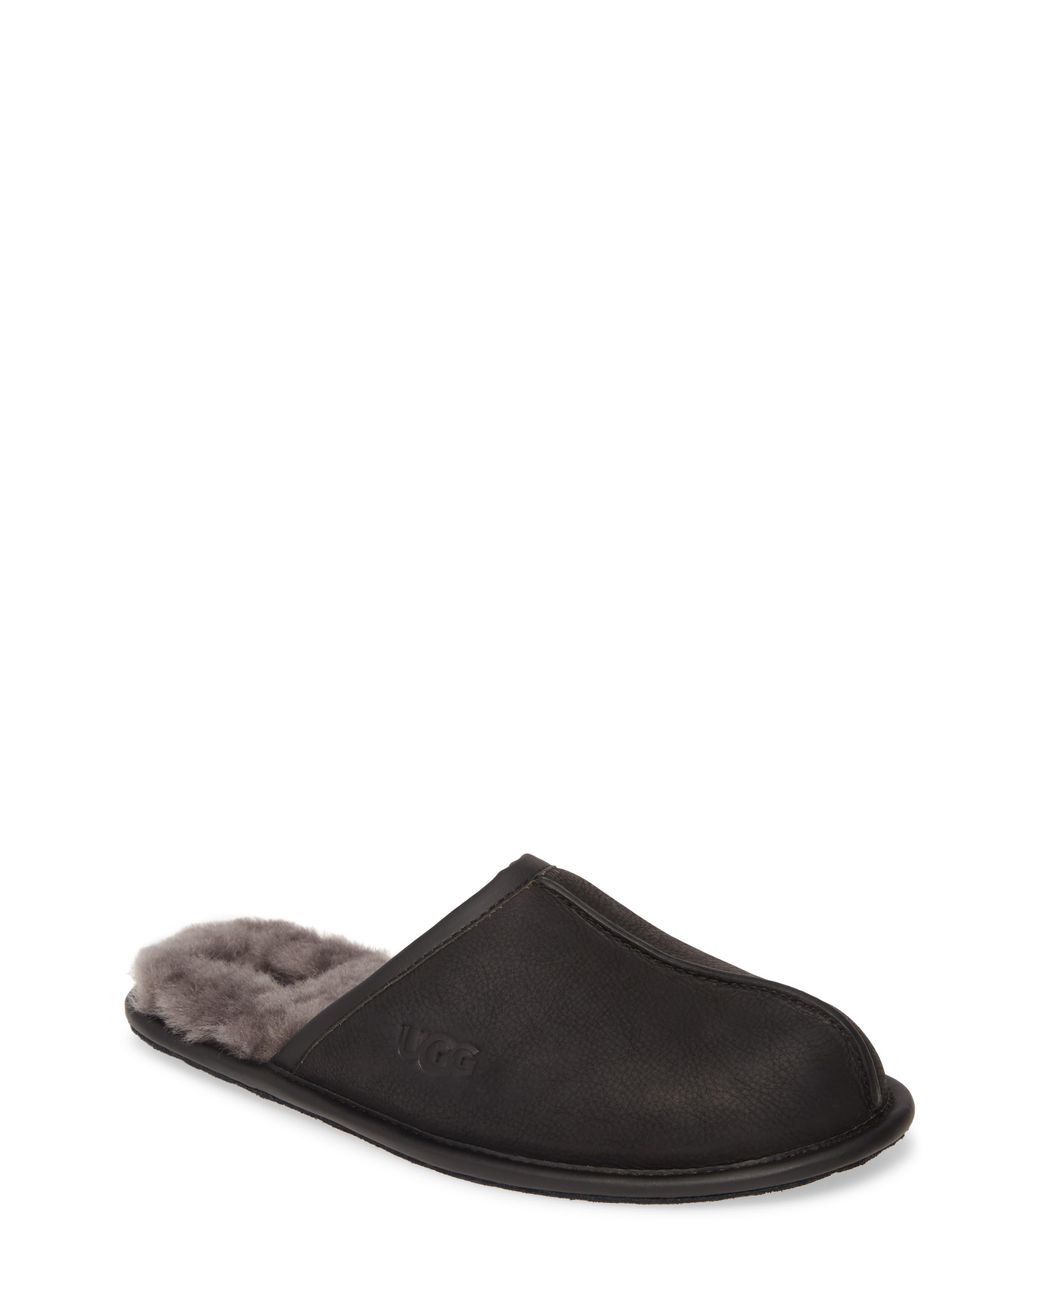 ugg leather scuff slipper